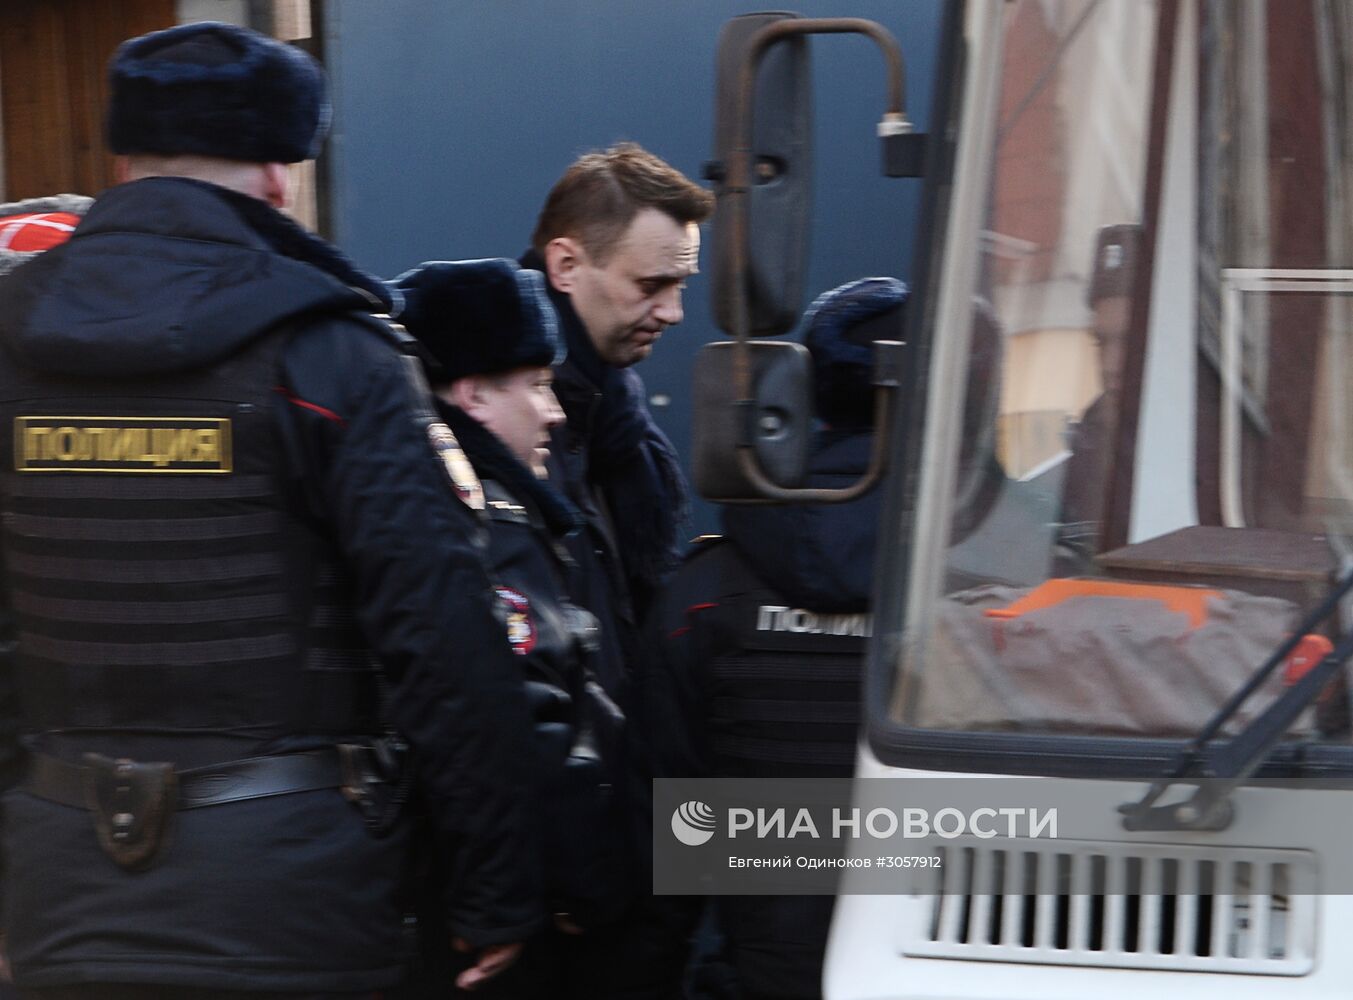 Рассмотрение дела об организации несанкционированной акции в отношении Алексея Навального